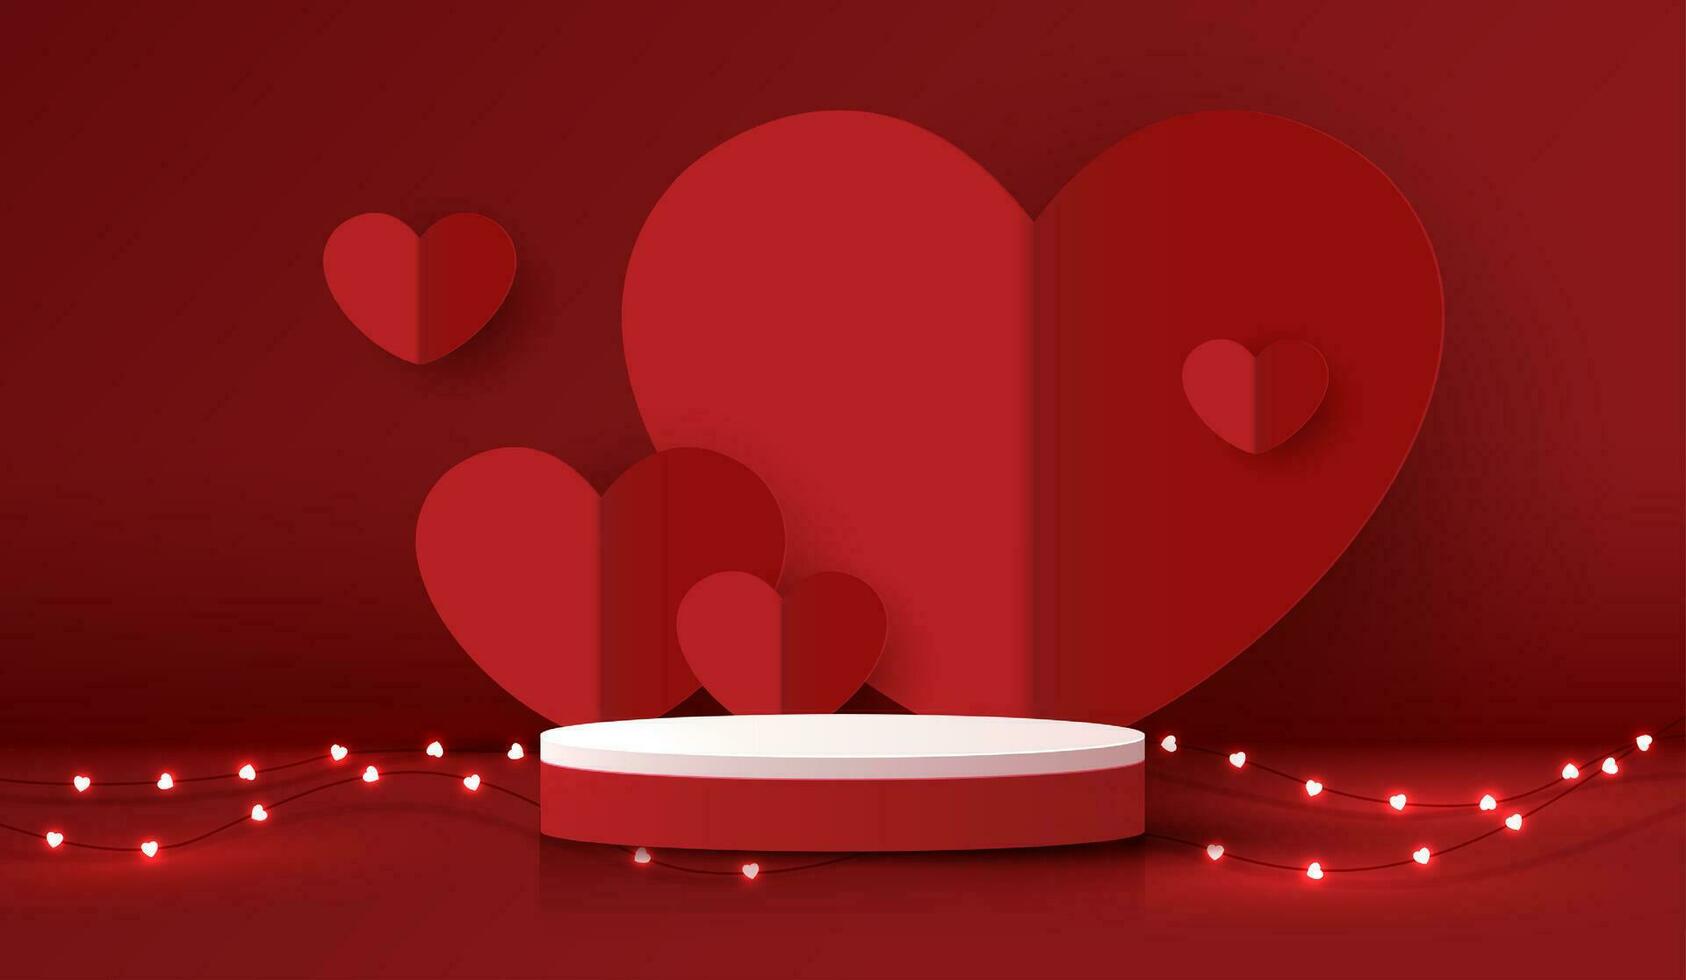 gelukkig valentijnsdag dag en stadium podium versierd met hart vorm geven aan. voetstuk tafereel met voor Product, kunstmatig, reclame, show, prijs ceremonie, Aan rood achtergrond en licht. vector ontwerp.